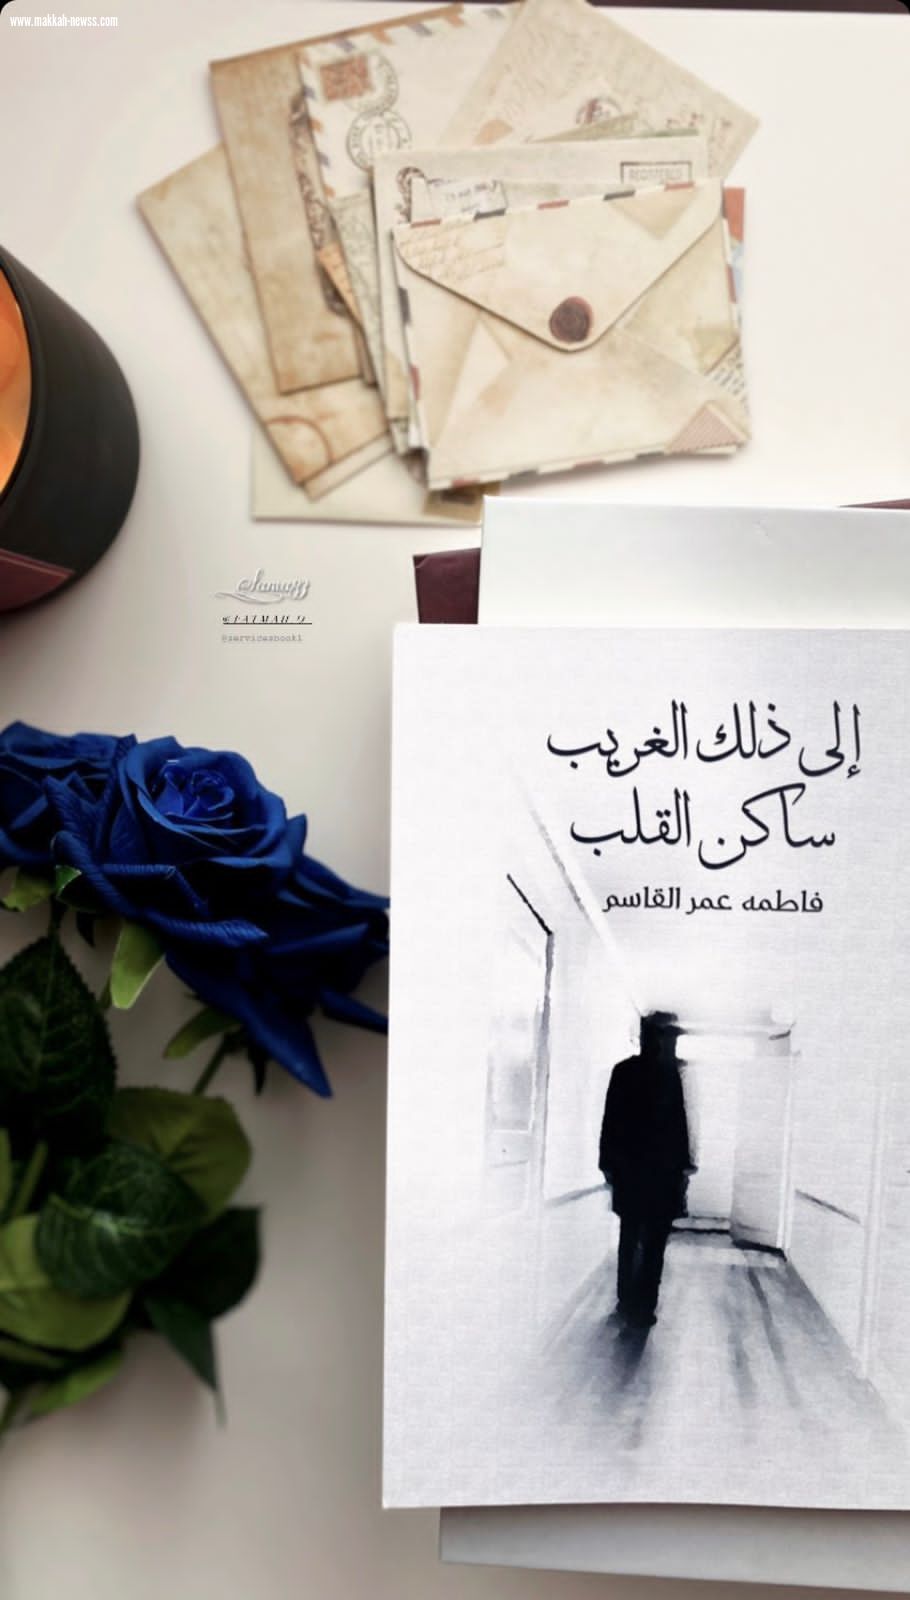 صحيفة صوت مكة الاجتماعية  تحاور الكاتبة فاطمة عمر القاسم  : ظاهرة مراجعة الكتب أصبحت تجارية وليست لغرض التطوير أو الانتقاد البناء.